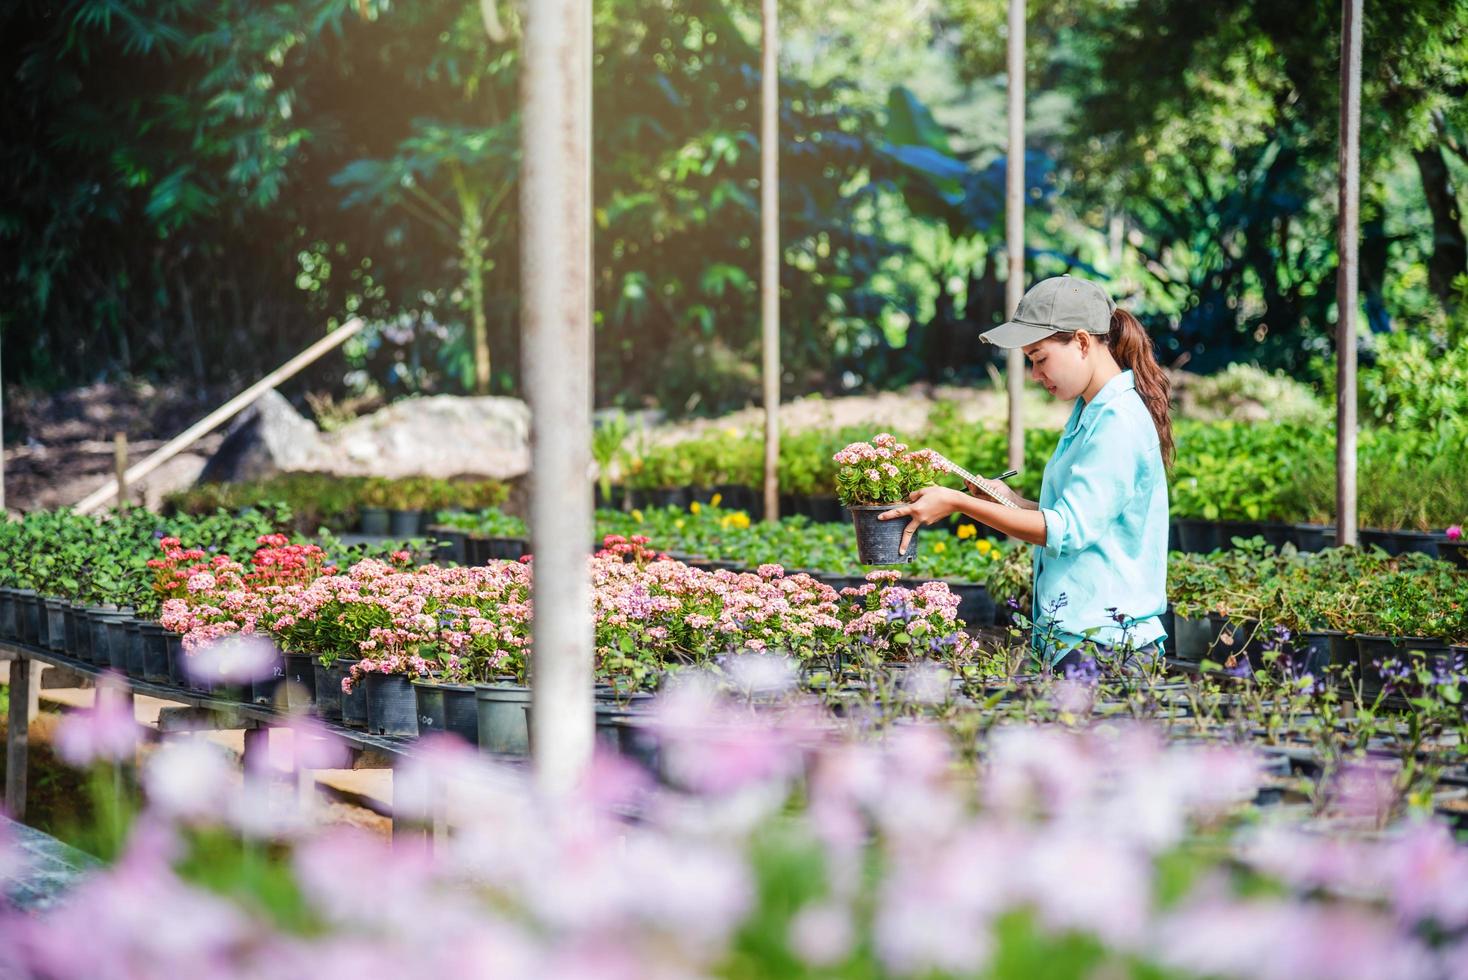 le giovani donne che lavorano nel giardino fiorito studiano e scrivono registrazioni dei cambiamenti degli alberi in fiore. sfondo del giardino fiorito foto